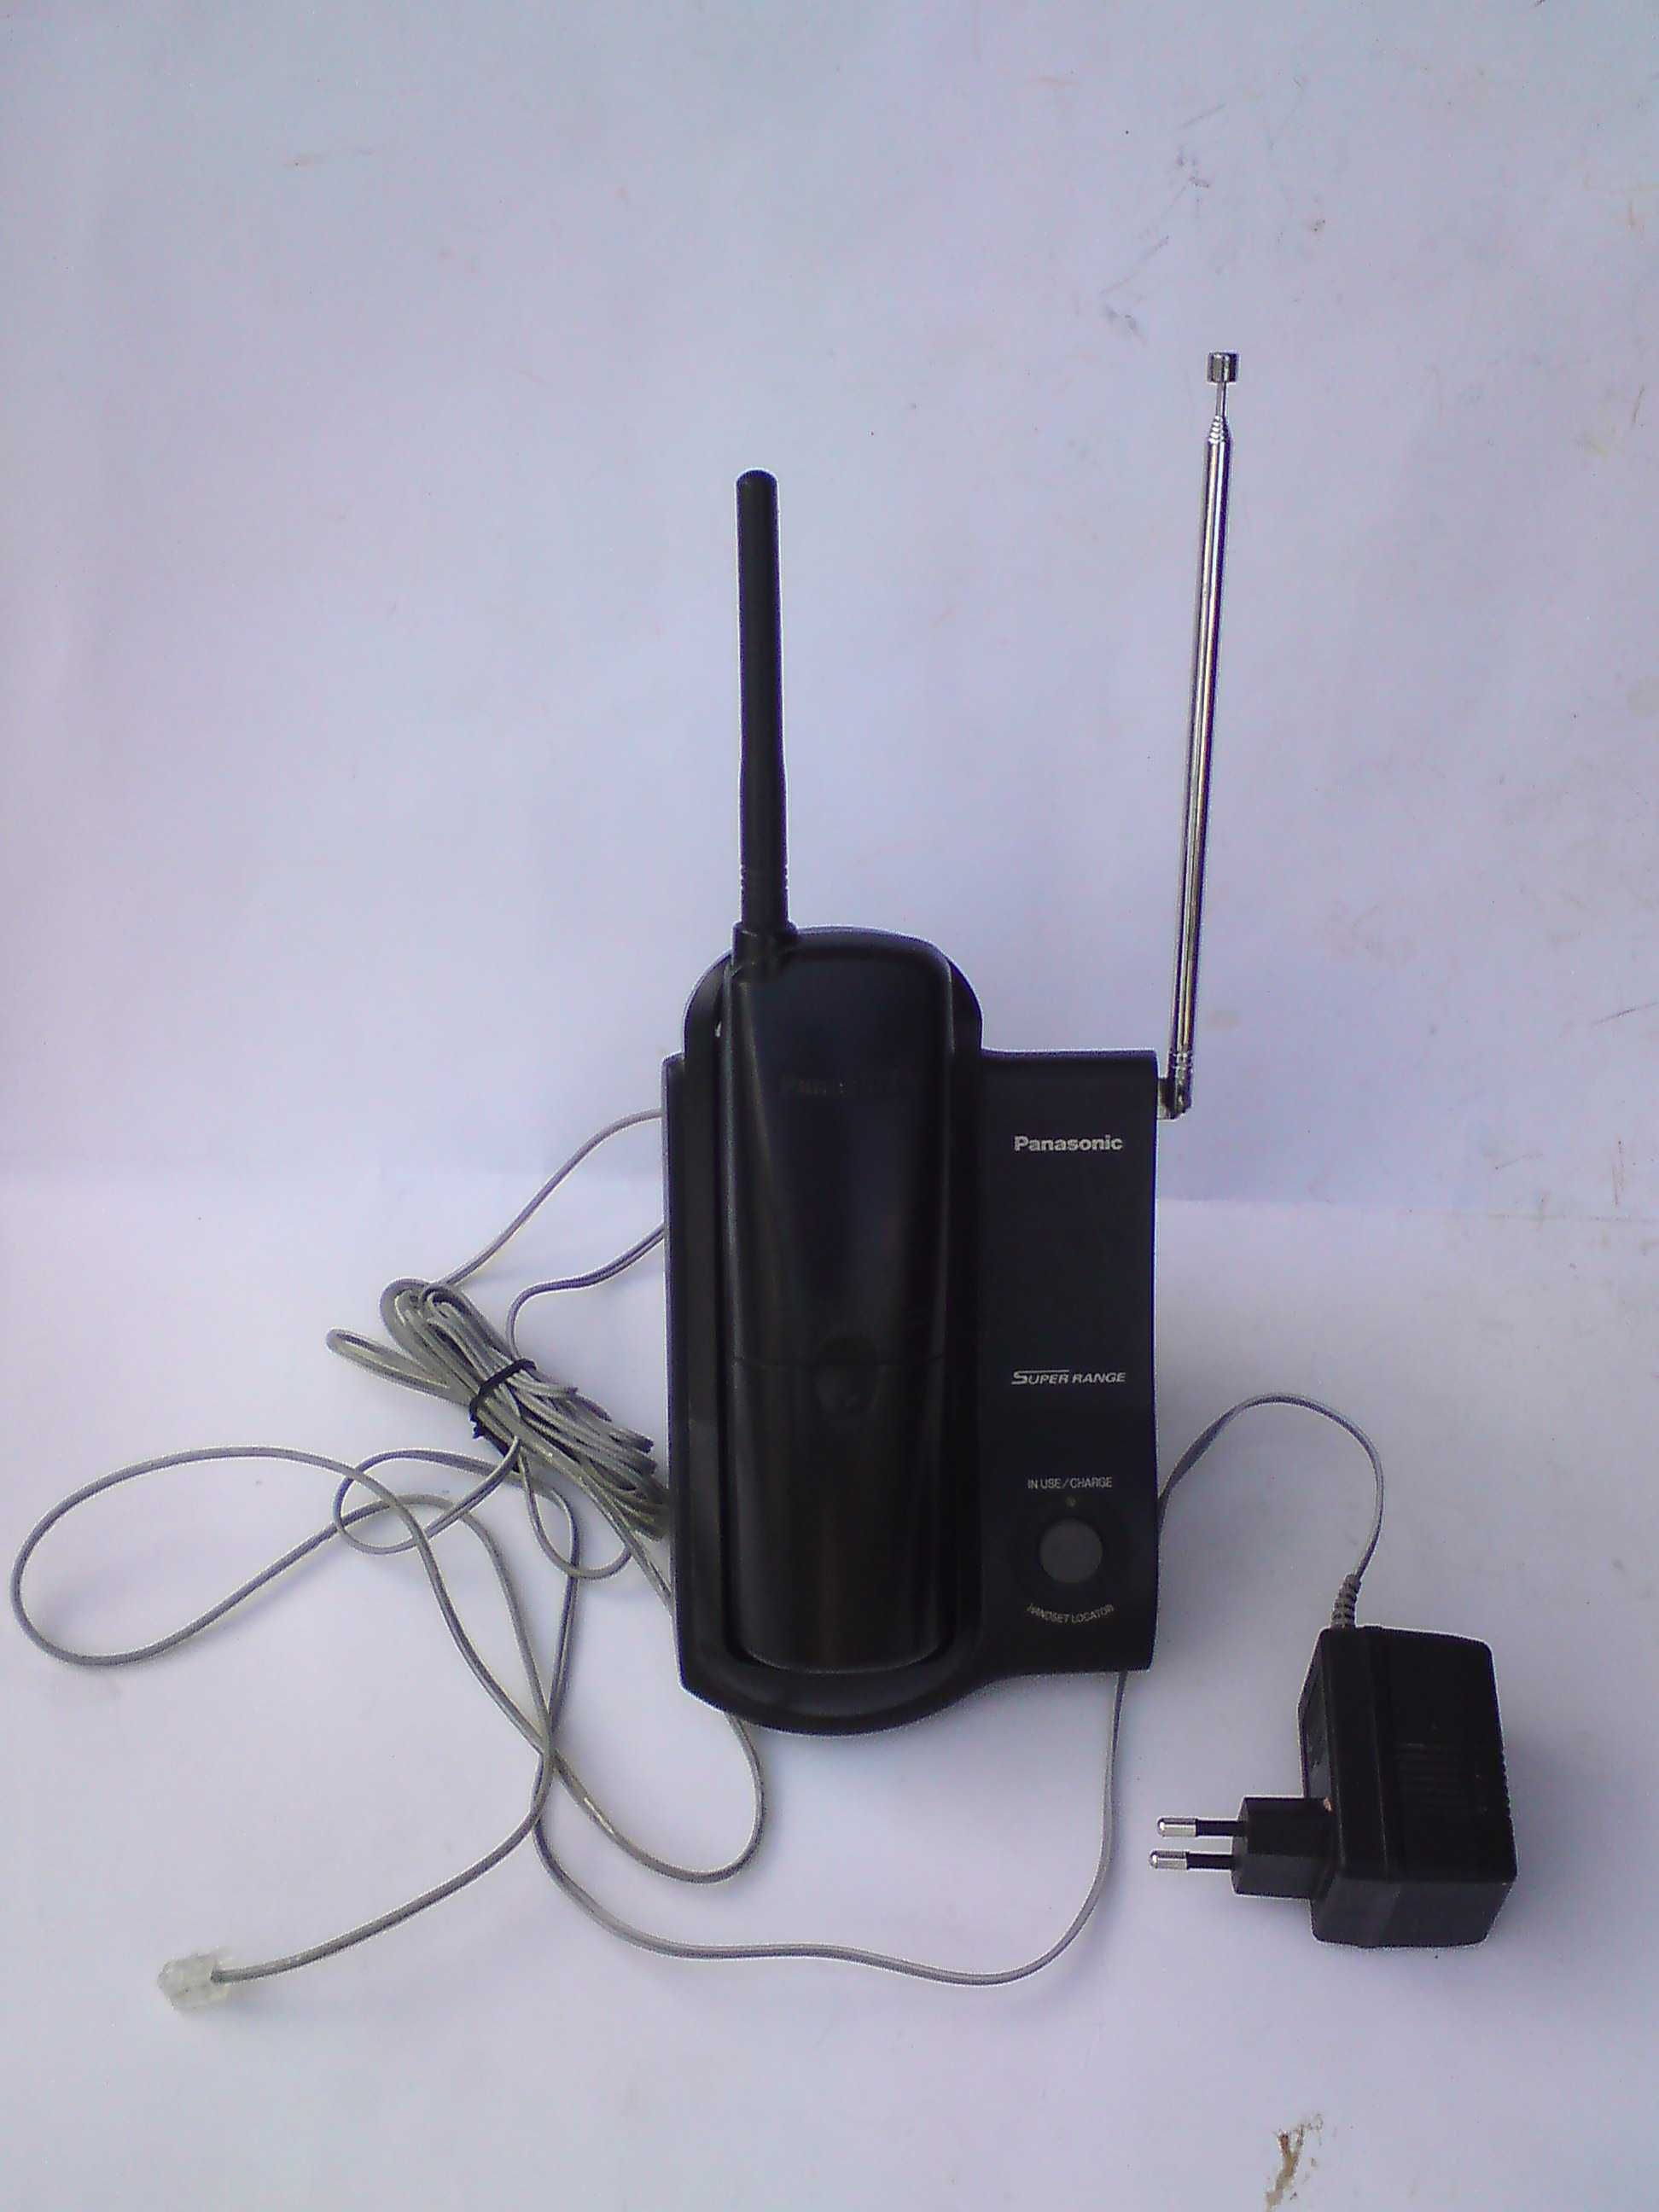 Беспроводной радиотелефон Panasonic KX-TC2106UA (состояние неизвестно)